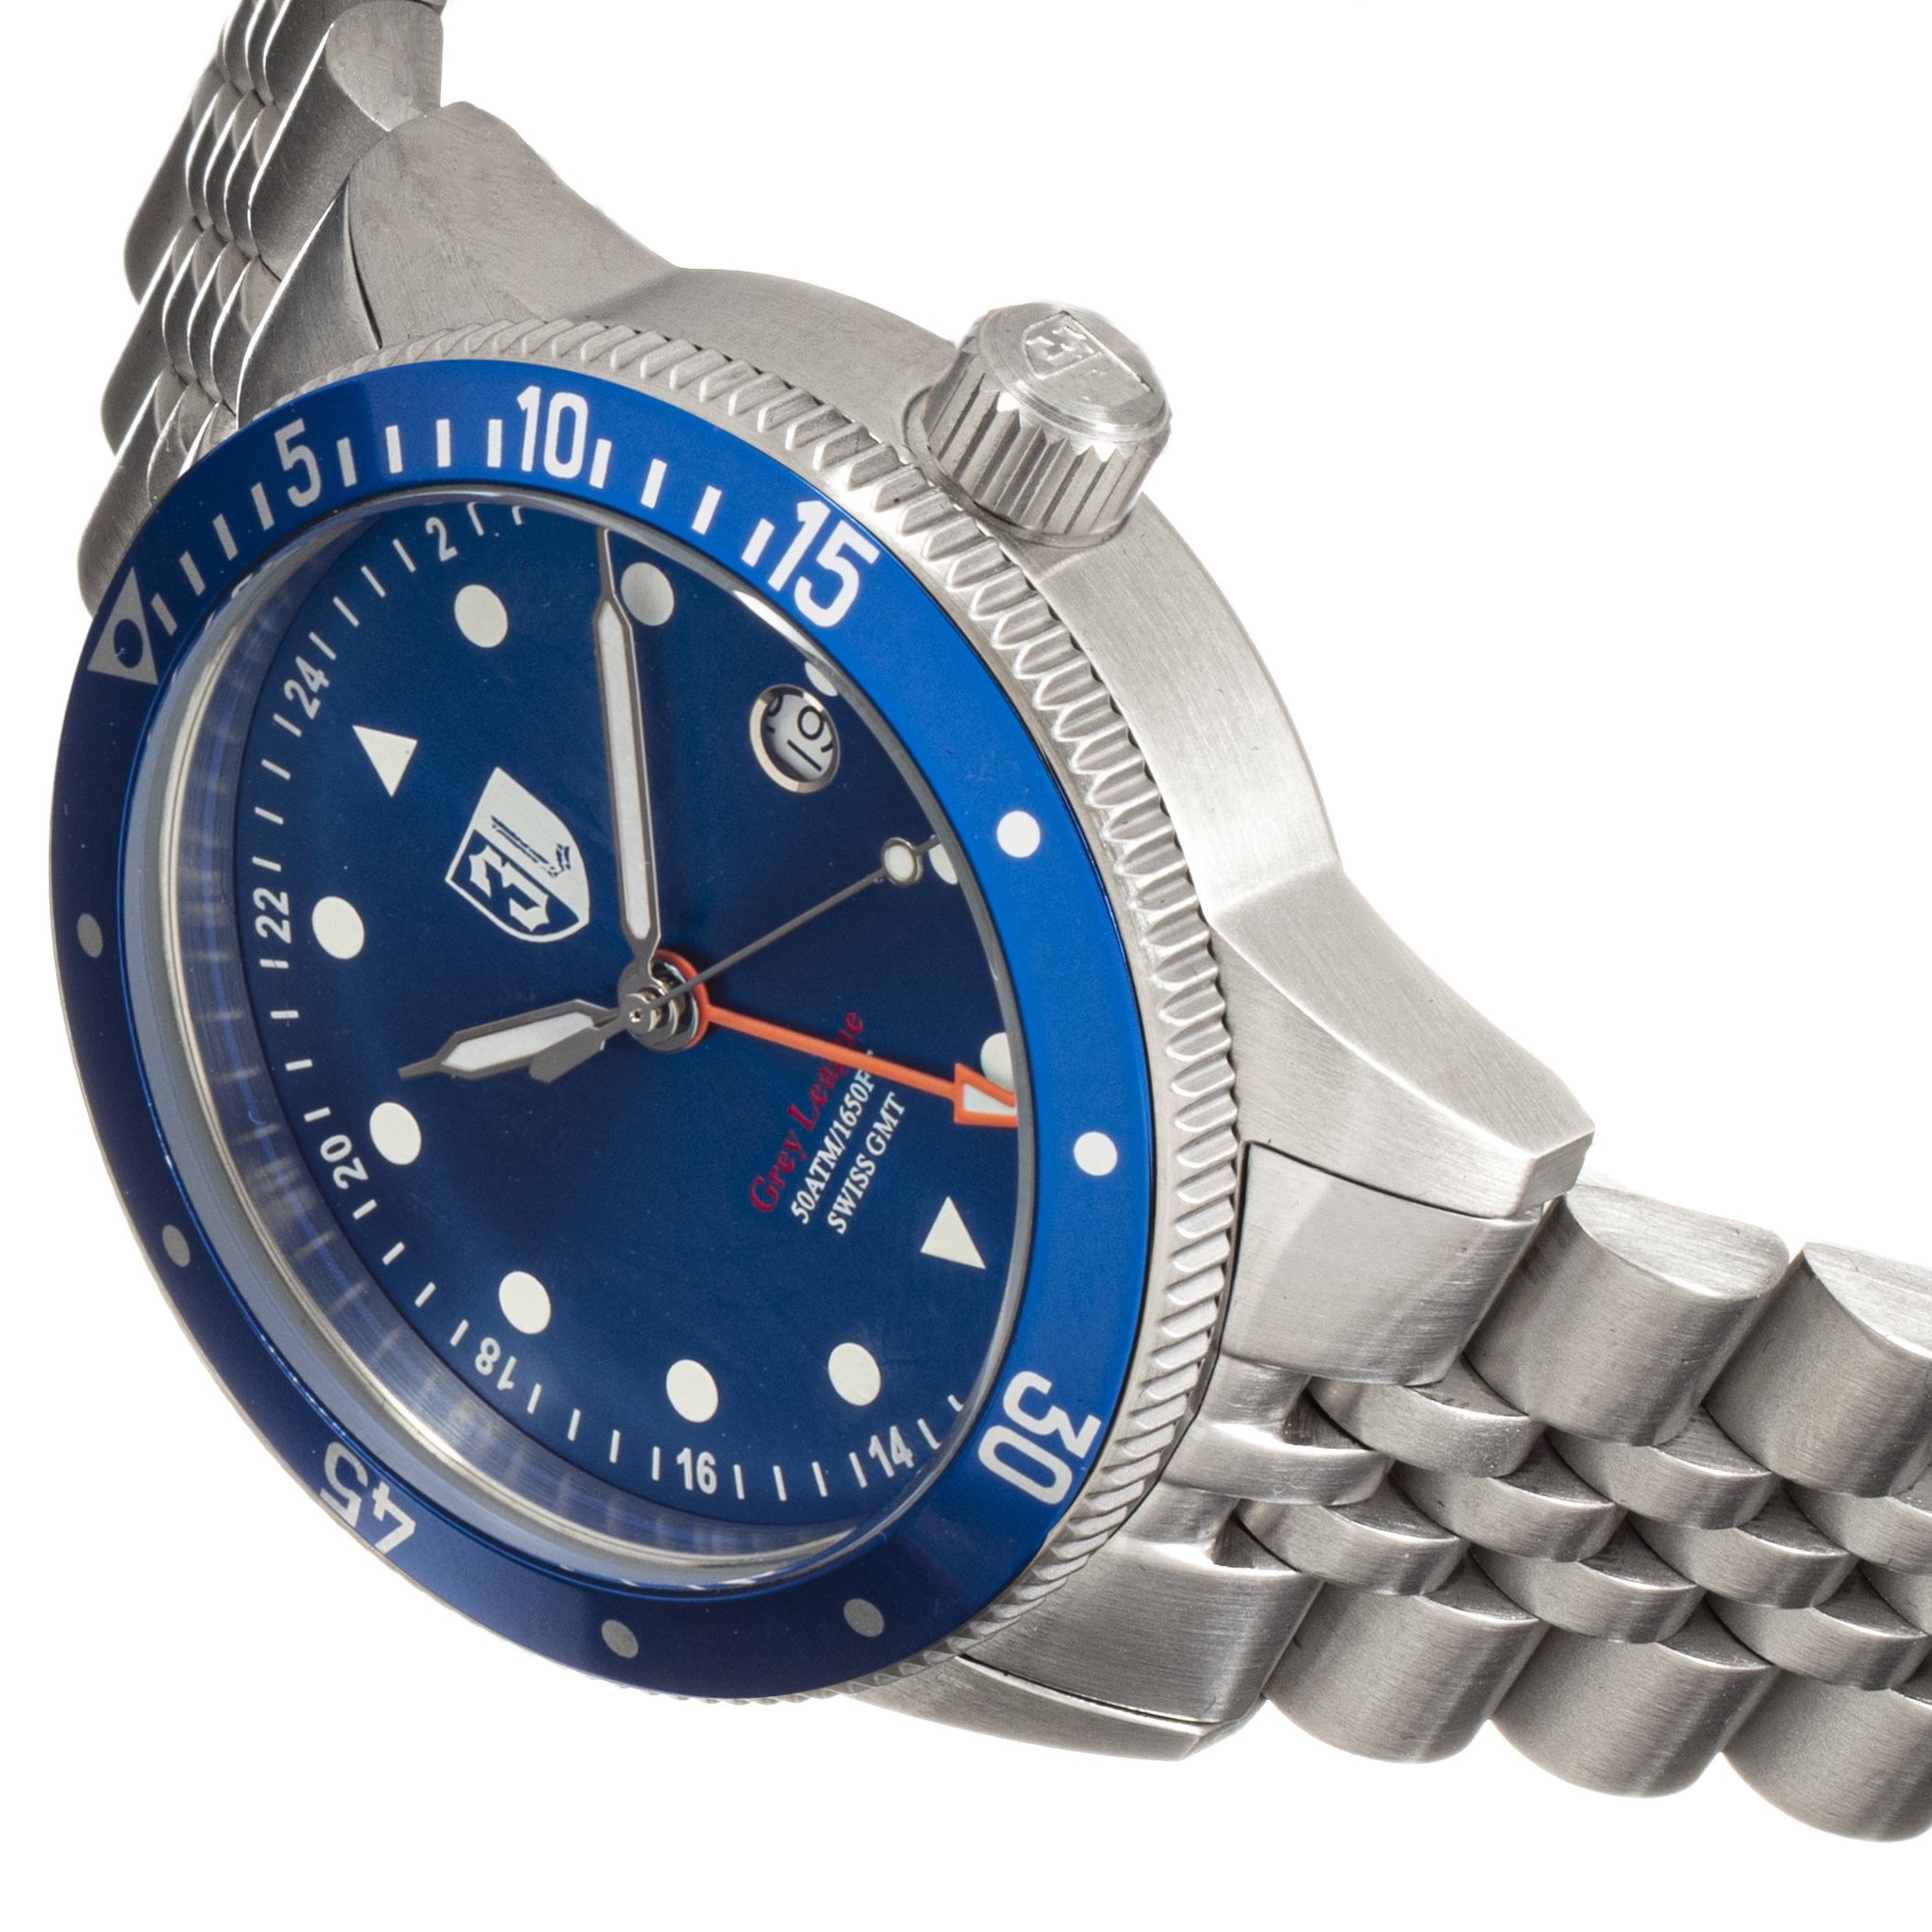 Three Leagues Grey Bracelet Watch w/Date - Blue - TLW3L206